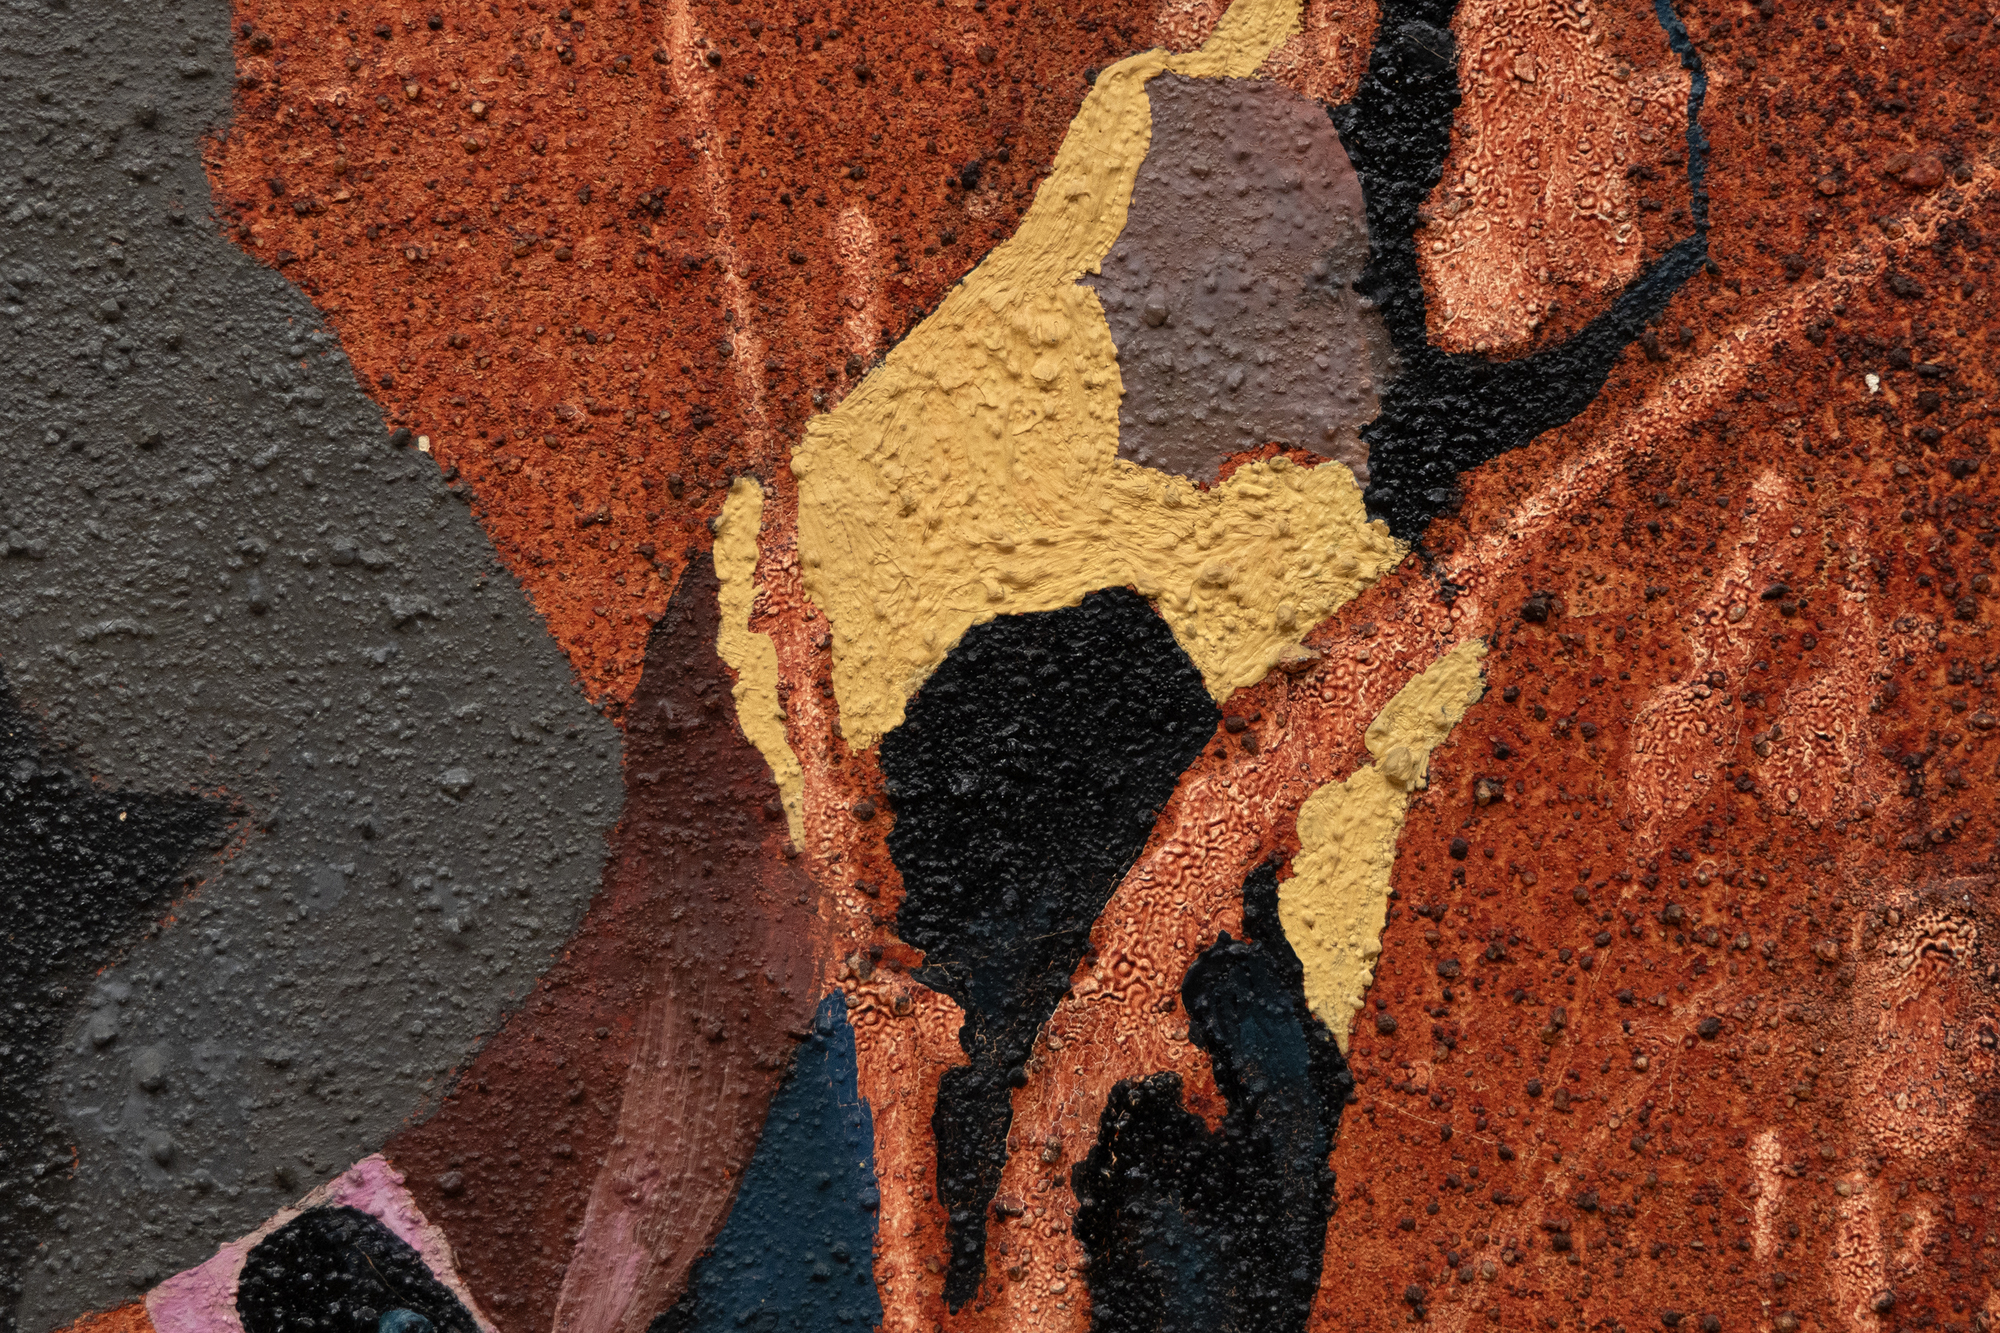 Cuando Dorothy Hood pintó Genios en 1956, exploró nuevos territorios, desarrollando varios métodos y un vocabulario de formas orgánicas extraídas de sus observaciones de la naturaleza y el cuerpo humano. Incluyendo su naturaleza ambigua y transformadora, los elementos abstractos y figurativos participan en una interacción dinámica, tejiendo, entrelazando y fusionando identidades dentro de una sopa metafísica. En lugar de la estasis formal de un tapiz tejido, en Genios, la abstracción respira, se estira y fluye en un campo de energía de zarcillos nervudos en forma de cinta. Es una obra que encarna una fusión de abstracción y surrealismo. Su profundidad de campo implícita, la perspectiva y las referencias figurativas sugieren a una mujer cuyo cuerpo arqueado impregna la pieza de profundidad emocional, psicológica o mitológica. Estos elementos capturan la compleja esencia de la postura y la situación de una mujer, combinando efectivamente los límites entre dos movimientos artísticos distintos.